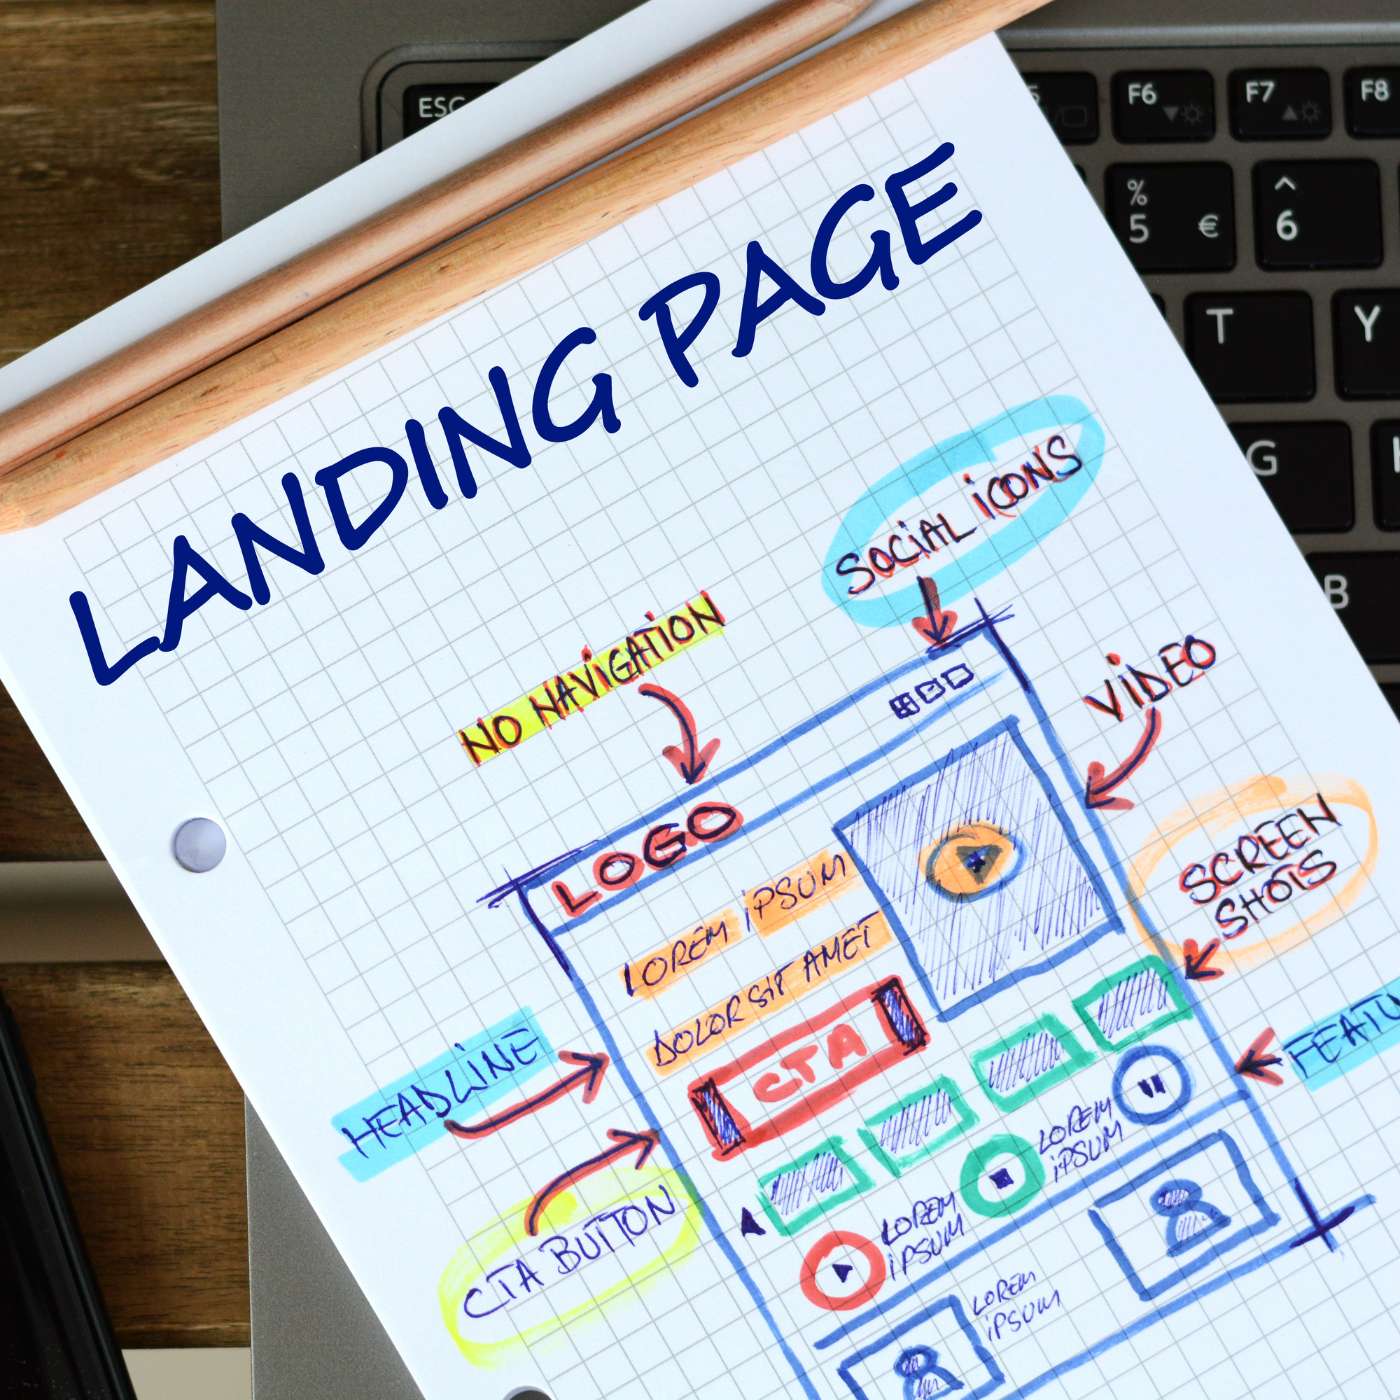 Aumenta tus conversiones optimizando tus landing page/aumenta-conversiones-optimizando-tu-landing-pages